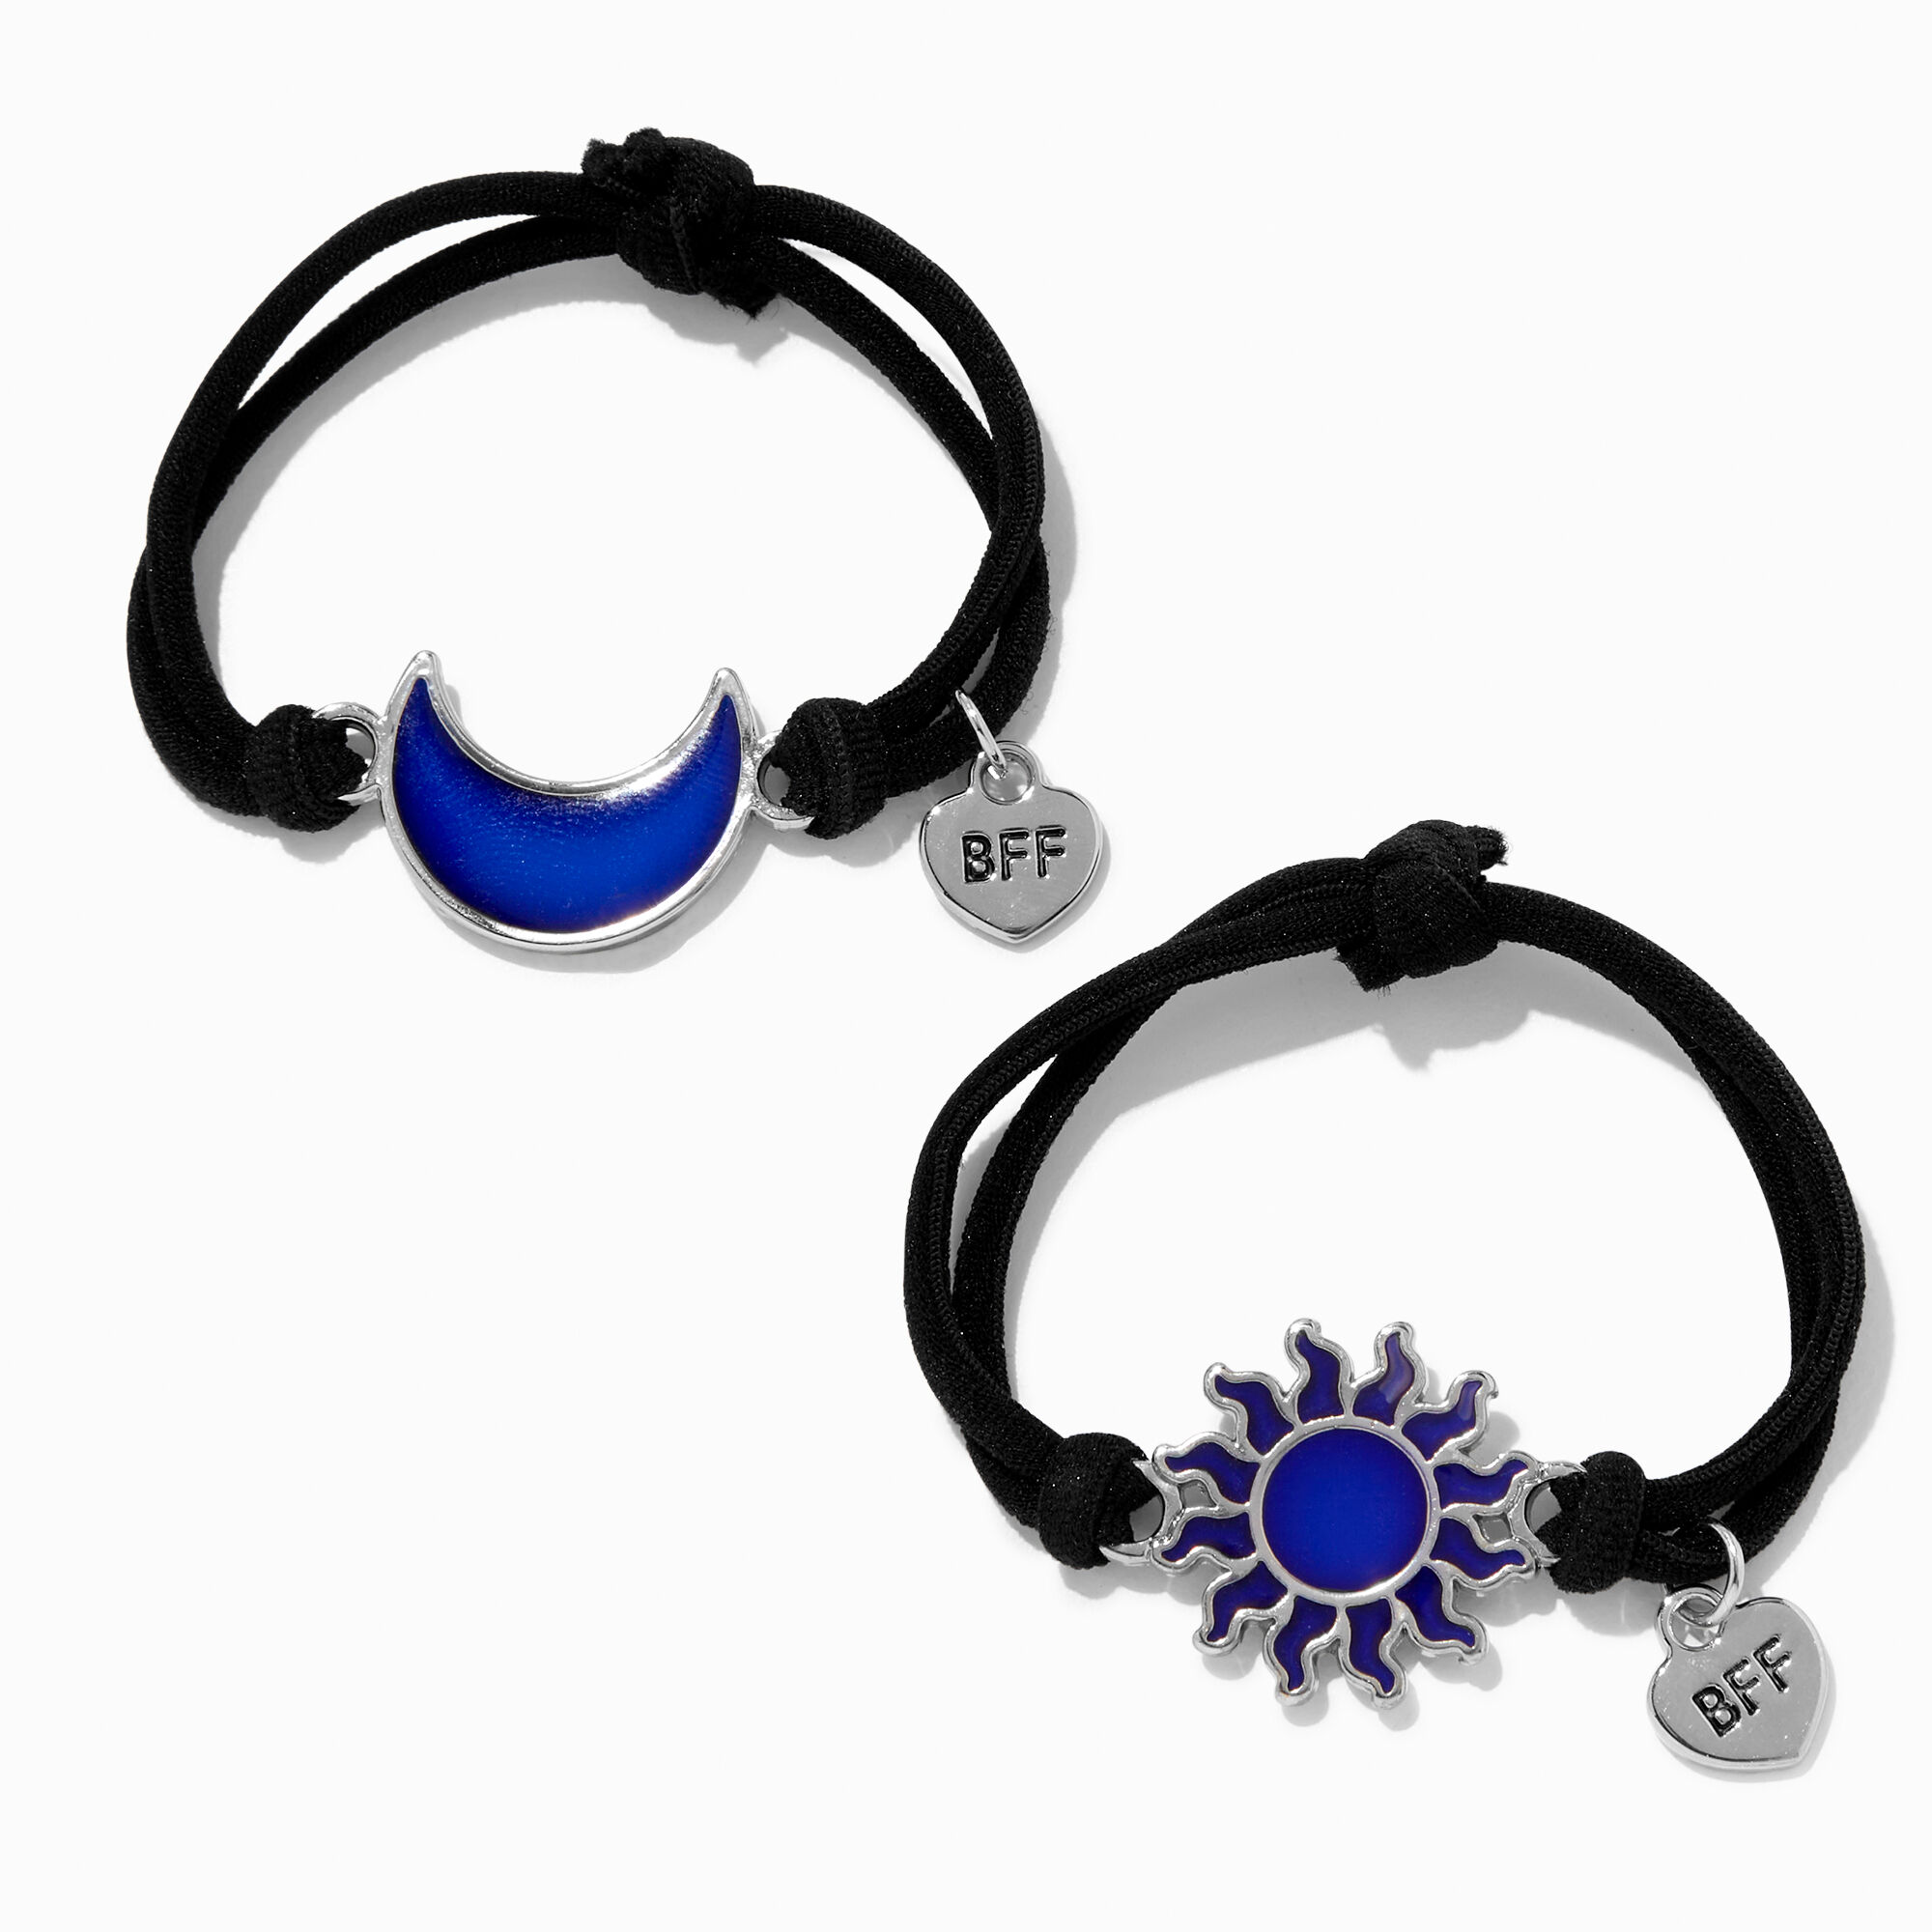 Bracelets )) Double Chain Knot bracelet - friendship-bracelets.net